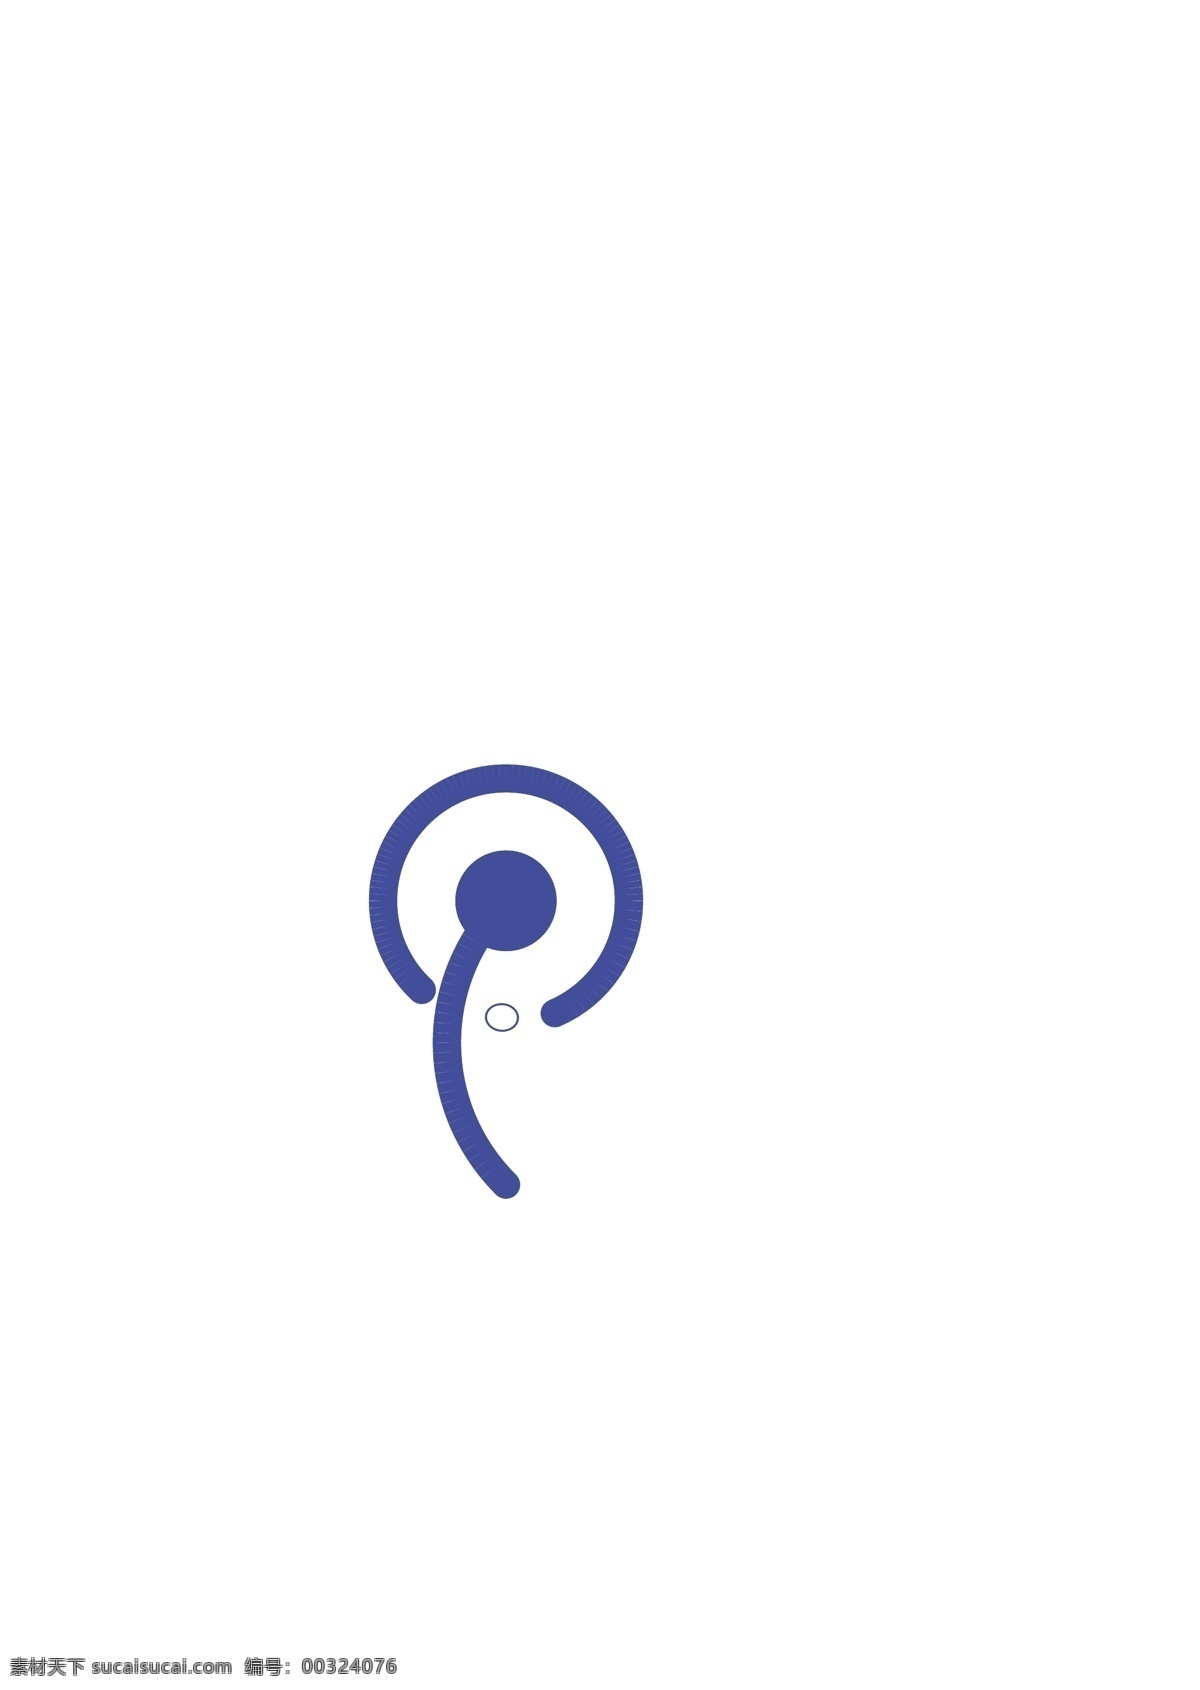 蒲公英 logo 标志 创意设计 创意 矢量图形 剪影 蓝色 科技感 婆婆丁 logo设计